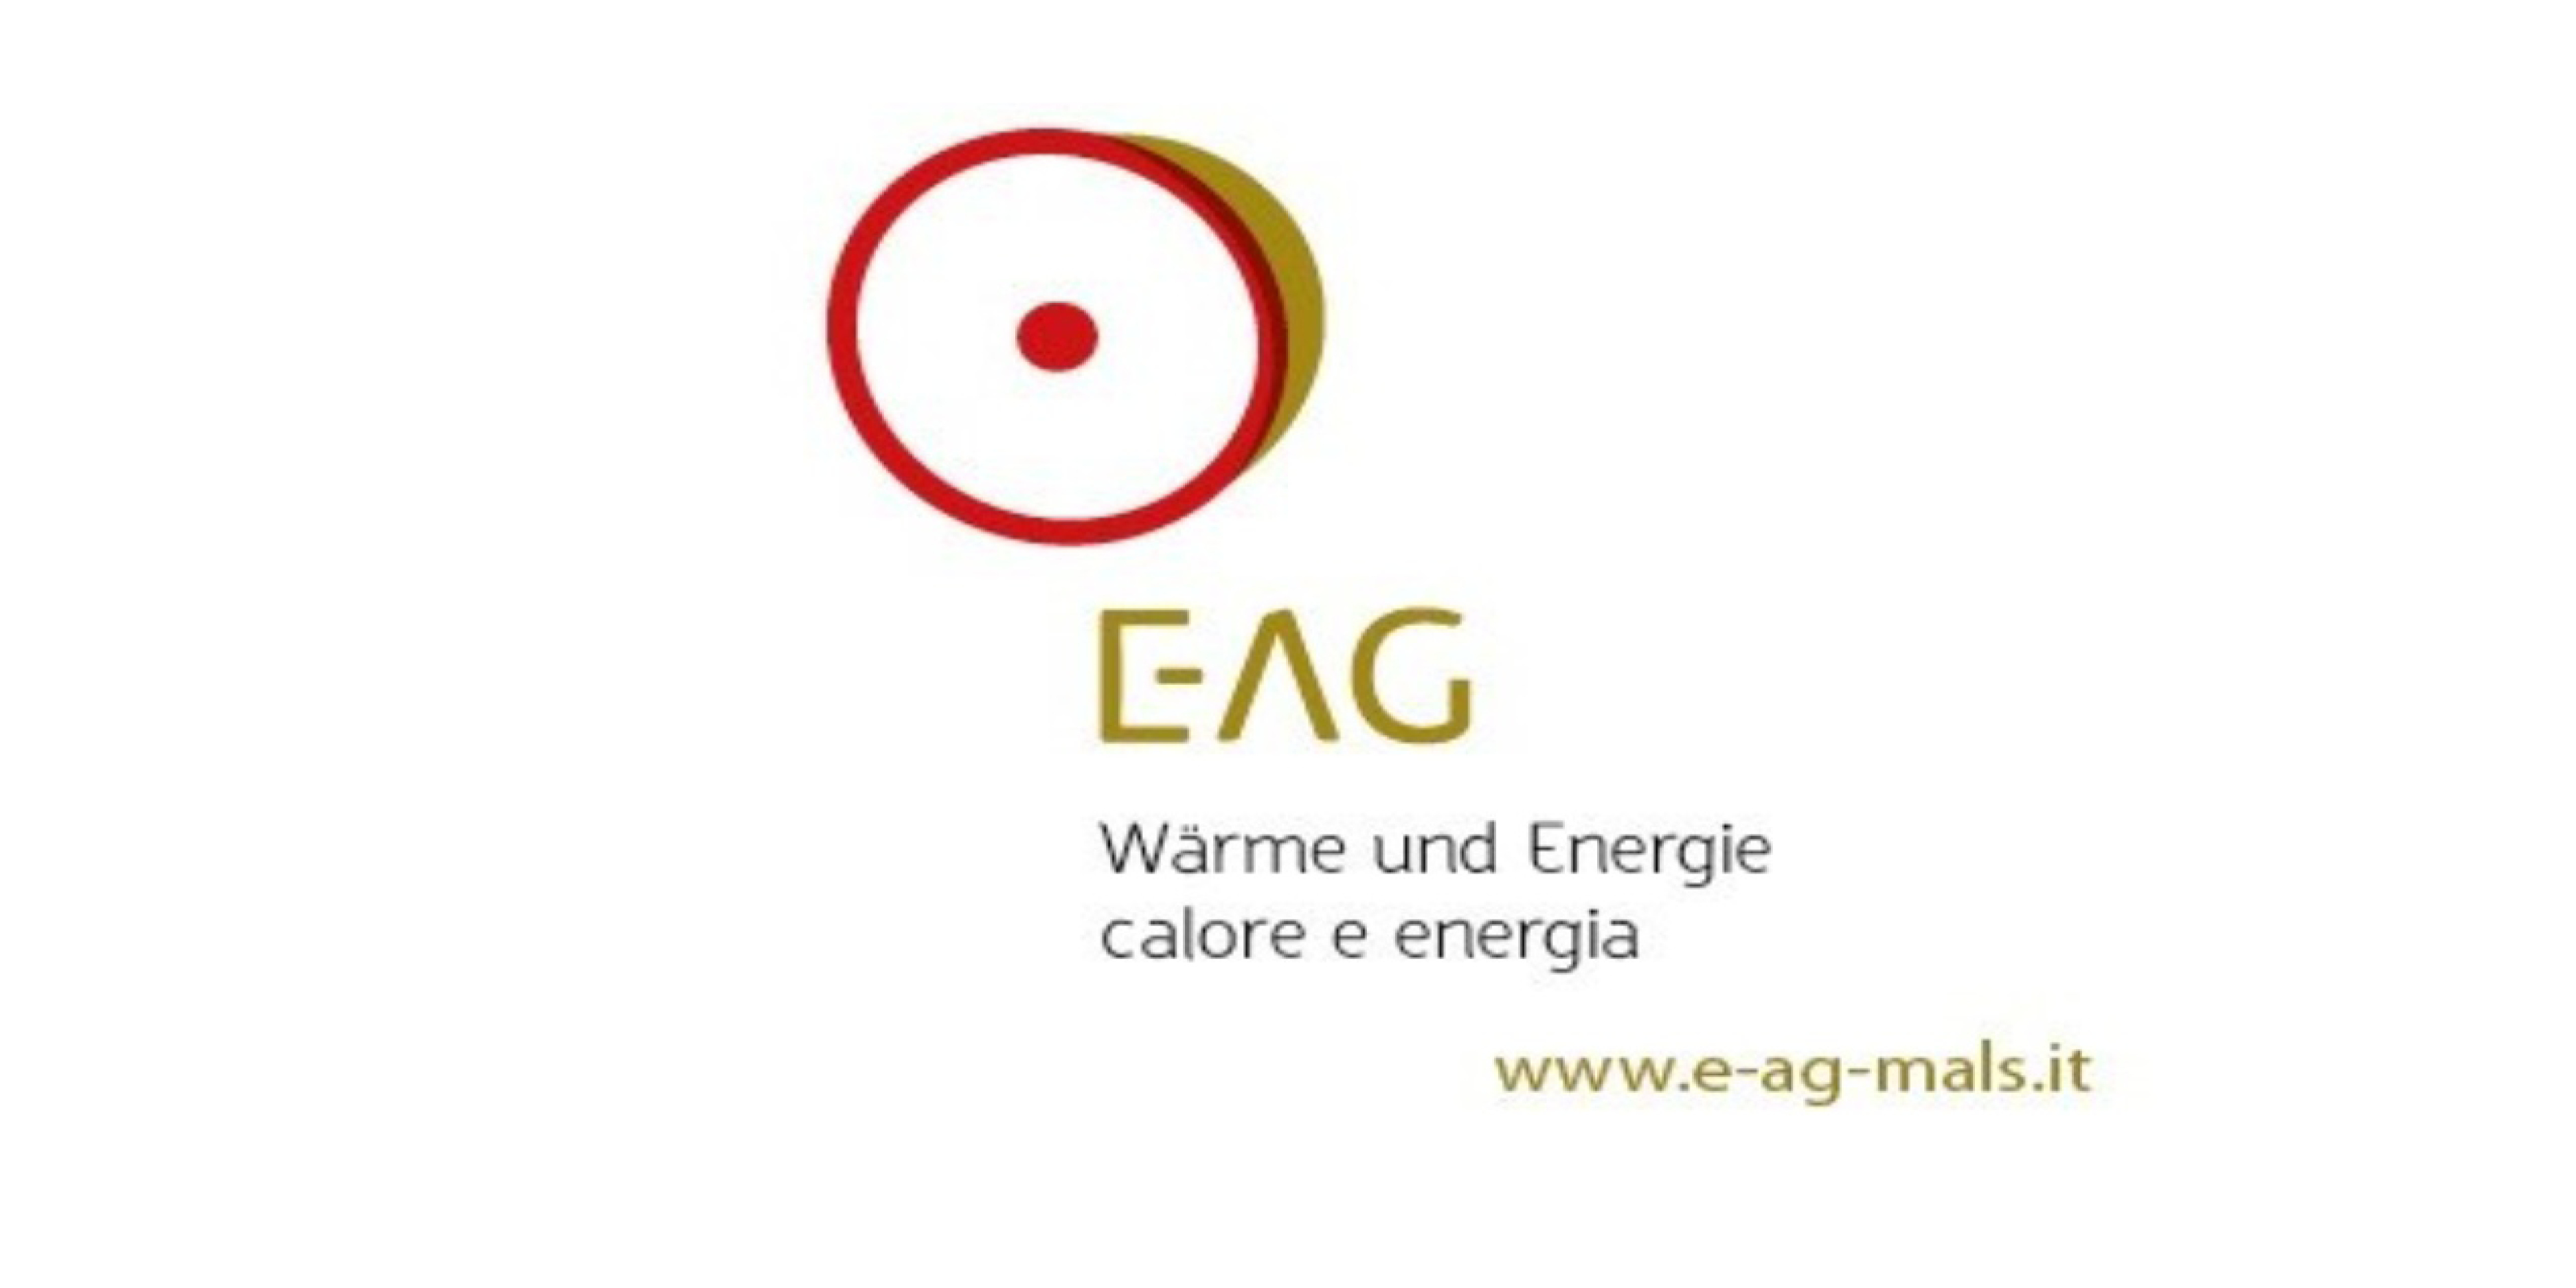 E-AG Mals